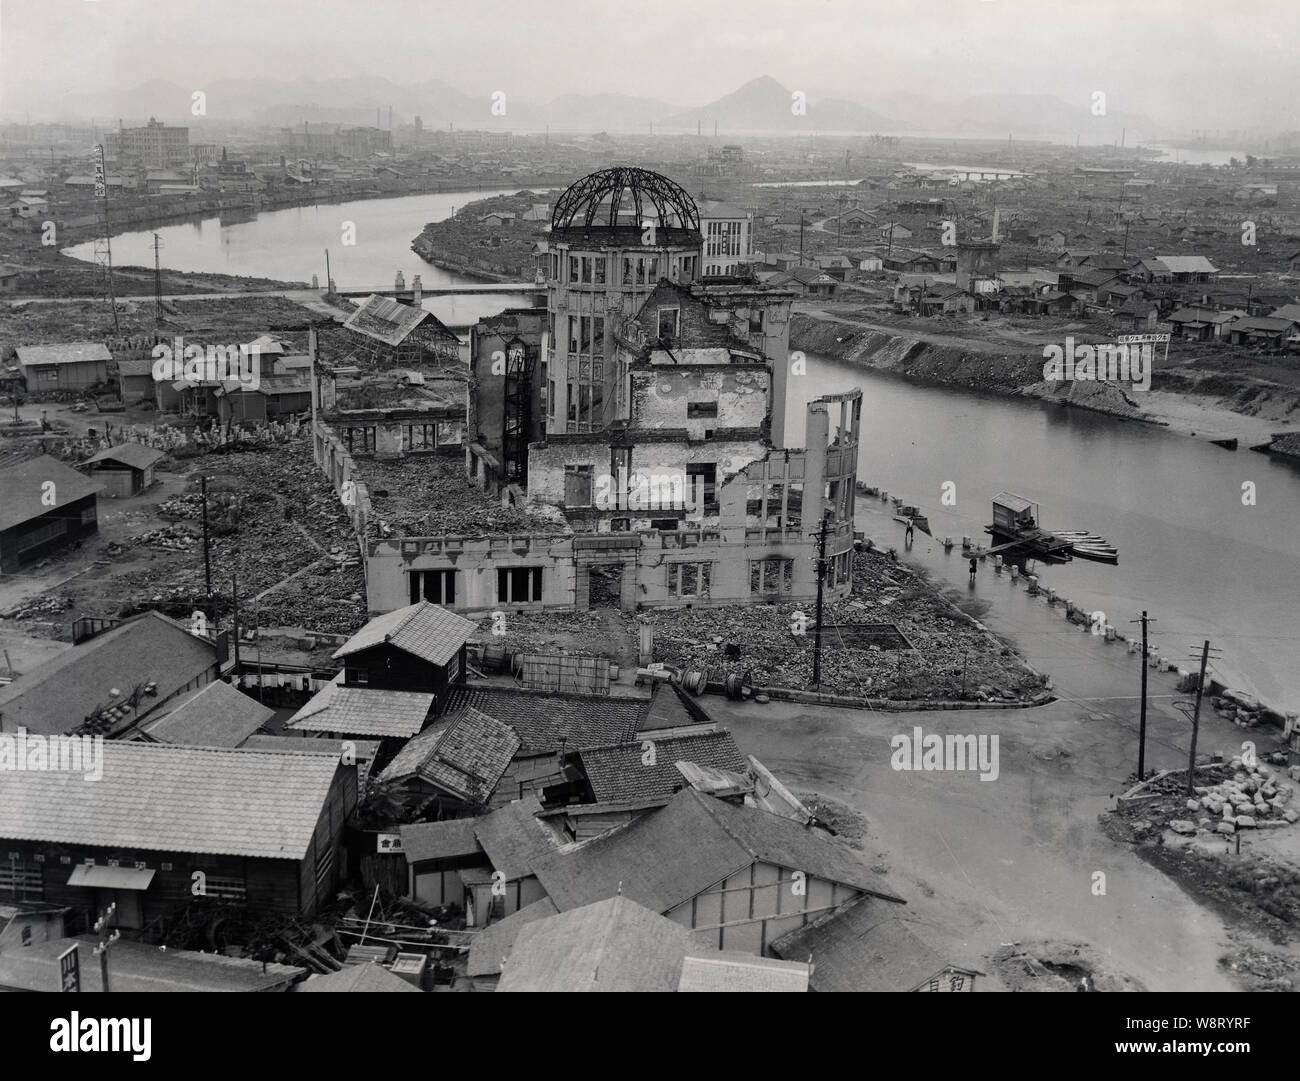 [ 1940s Giappone - Hiroshima bomba a cupola, 1947 ] - La Cupola della Bomba atomica di Hiroshima nel luglio 1947 Showa (22). Hiroshima si sta lentamente ricostruito. Progettato da architetto ceco Jan Letzel, la costruzione è stata completata nel mese di aprile 1915 (Taisho 4) e denominato inizialmente l'Hiroshima Prefectural mostra commerciale (HMI). Il 6 agosto 1945 (Showa 20) esplosione nucleare che ha devastato Hiroshima luogo trovato quasi direttamente al di sopra dell'edificio. Ora noto come la cupola di Genbaku (A-Bomb Dome), questa pace di Hiroshima Memorial è stato registrato nella Lista del Patrimonio Mondiale dell'UNESCO nel dicembre 1996 (Heisei 8). Foto Stock